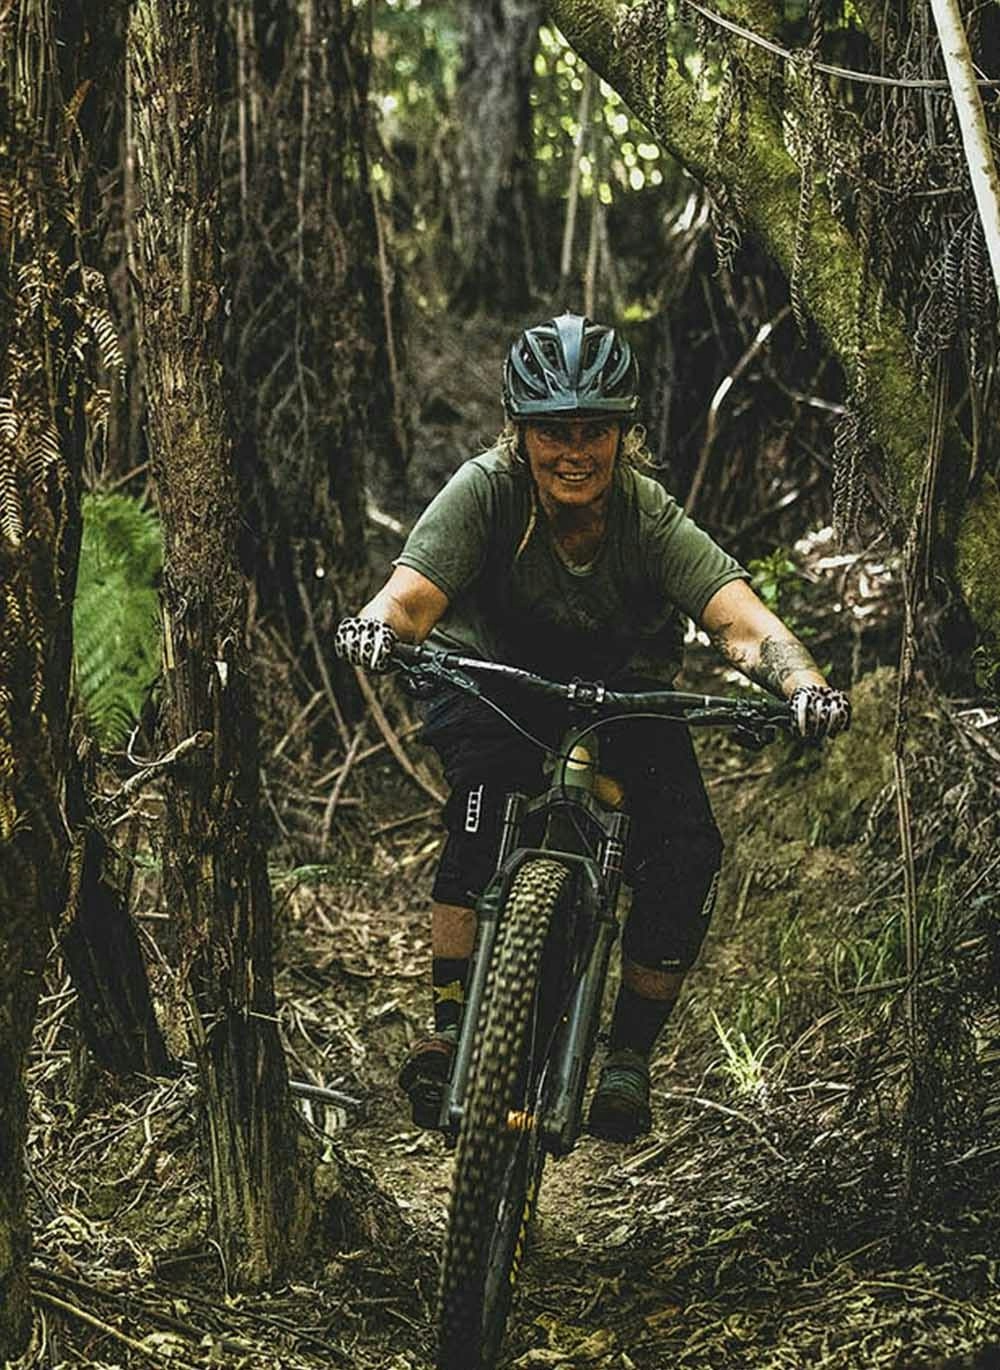 Anka Martin riding through a forest